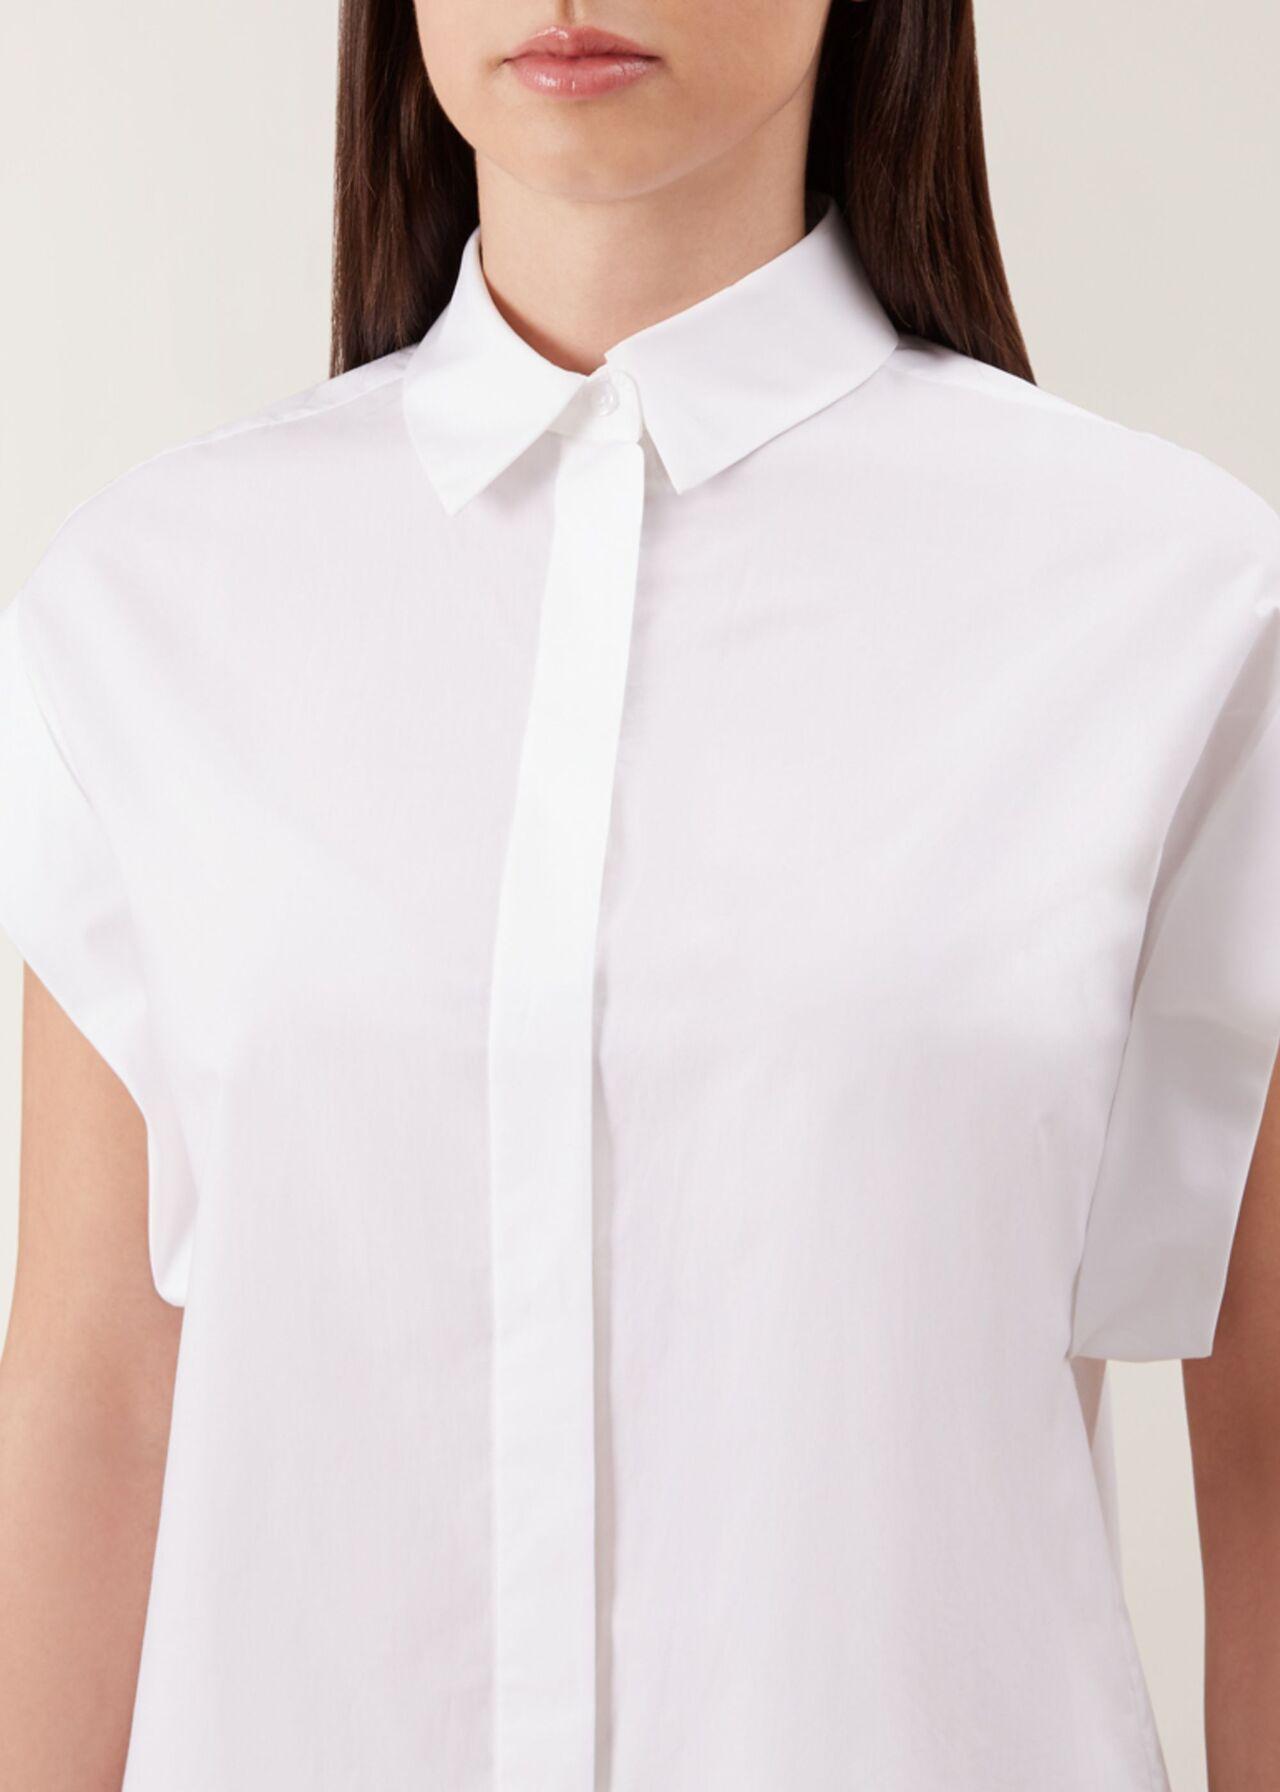 Hobbs Cotton Susanna Shirt in White - Lyst